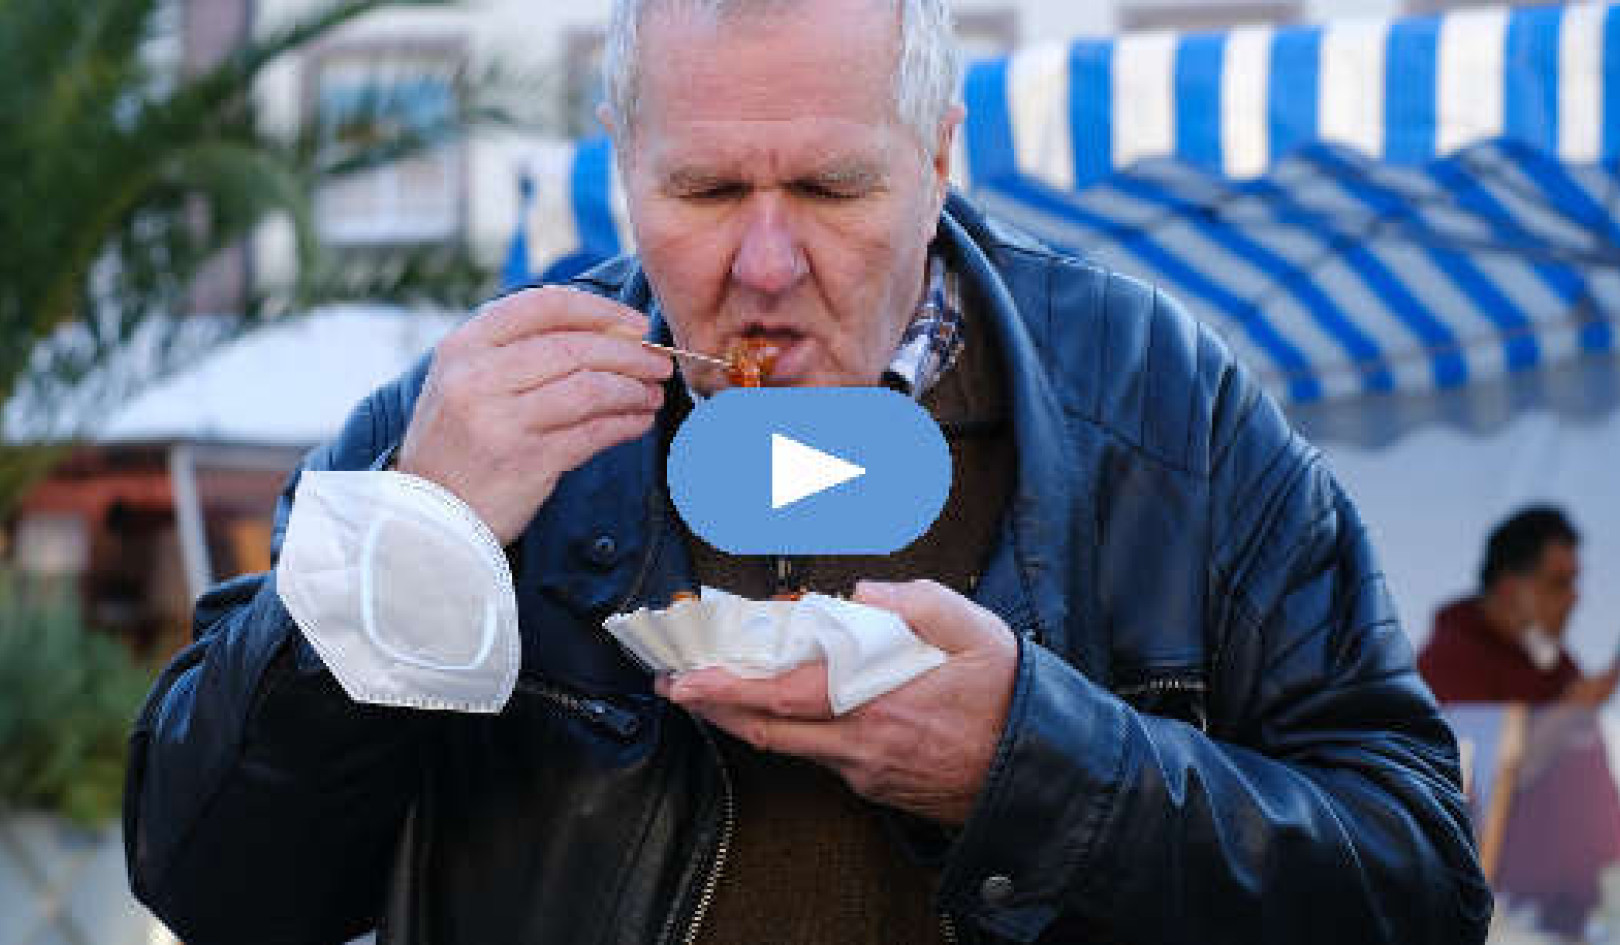 Det handler ikke om maden: overspisning, afhængighed og følelser (video)